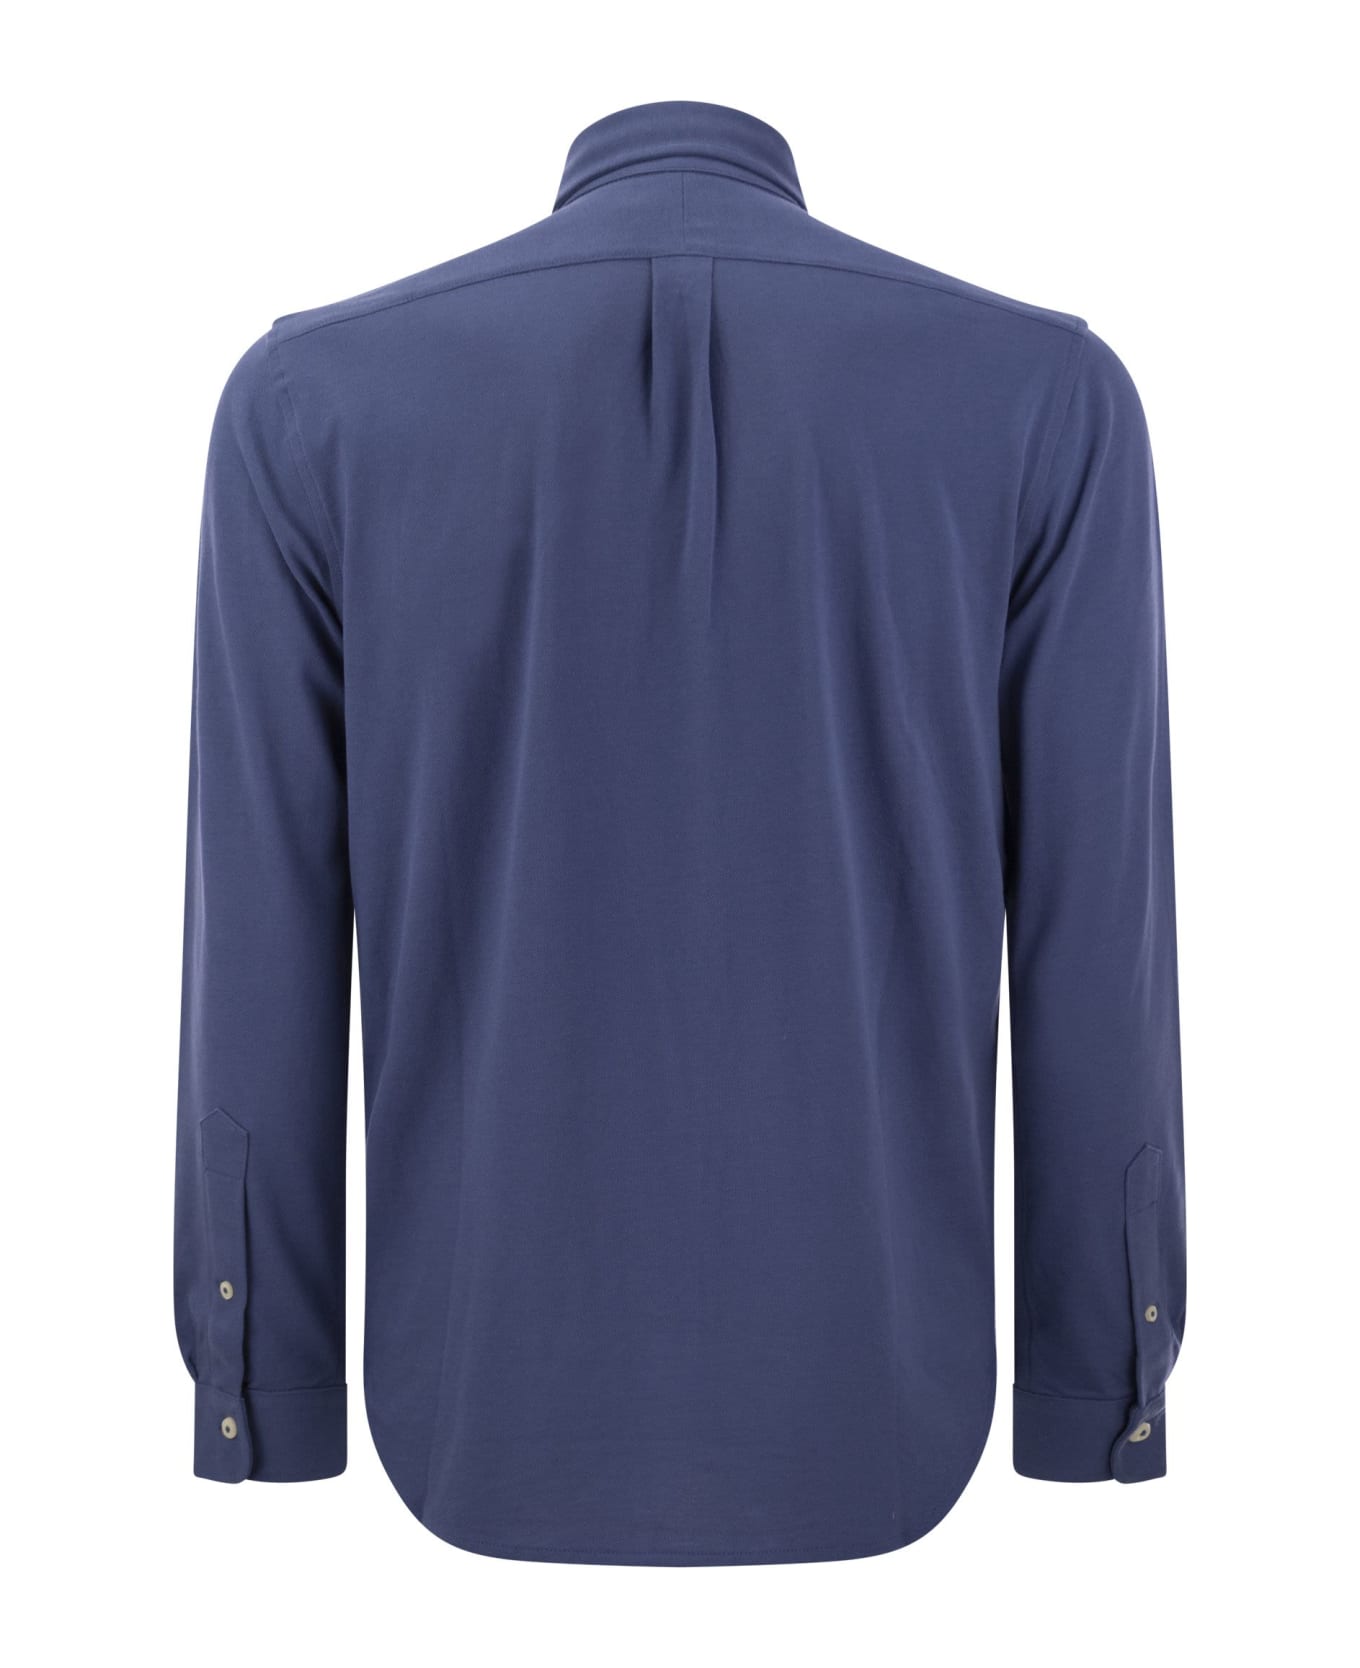 Polo Ralph Lauren Ultralight Pique Shirt - Old Royal シャツ